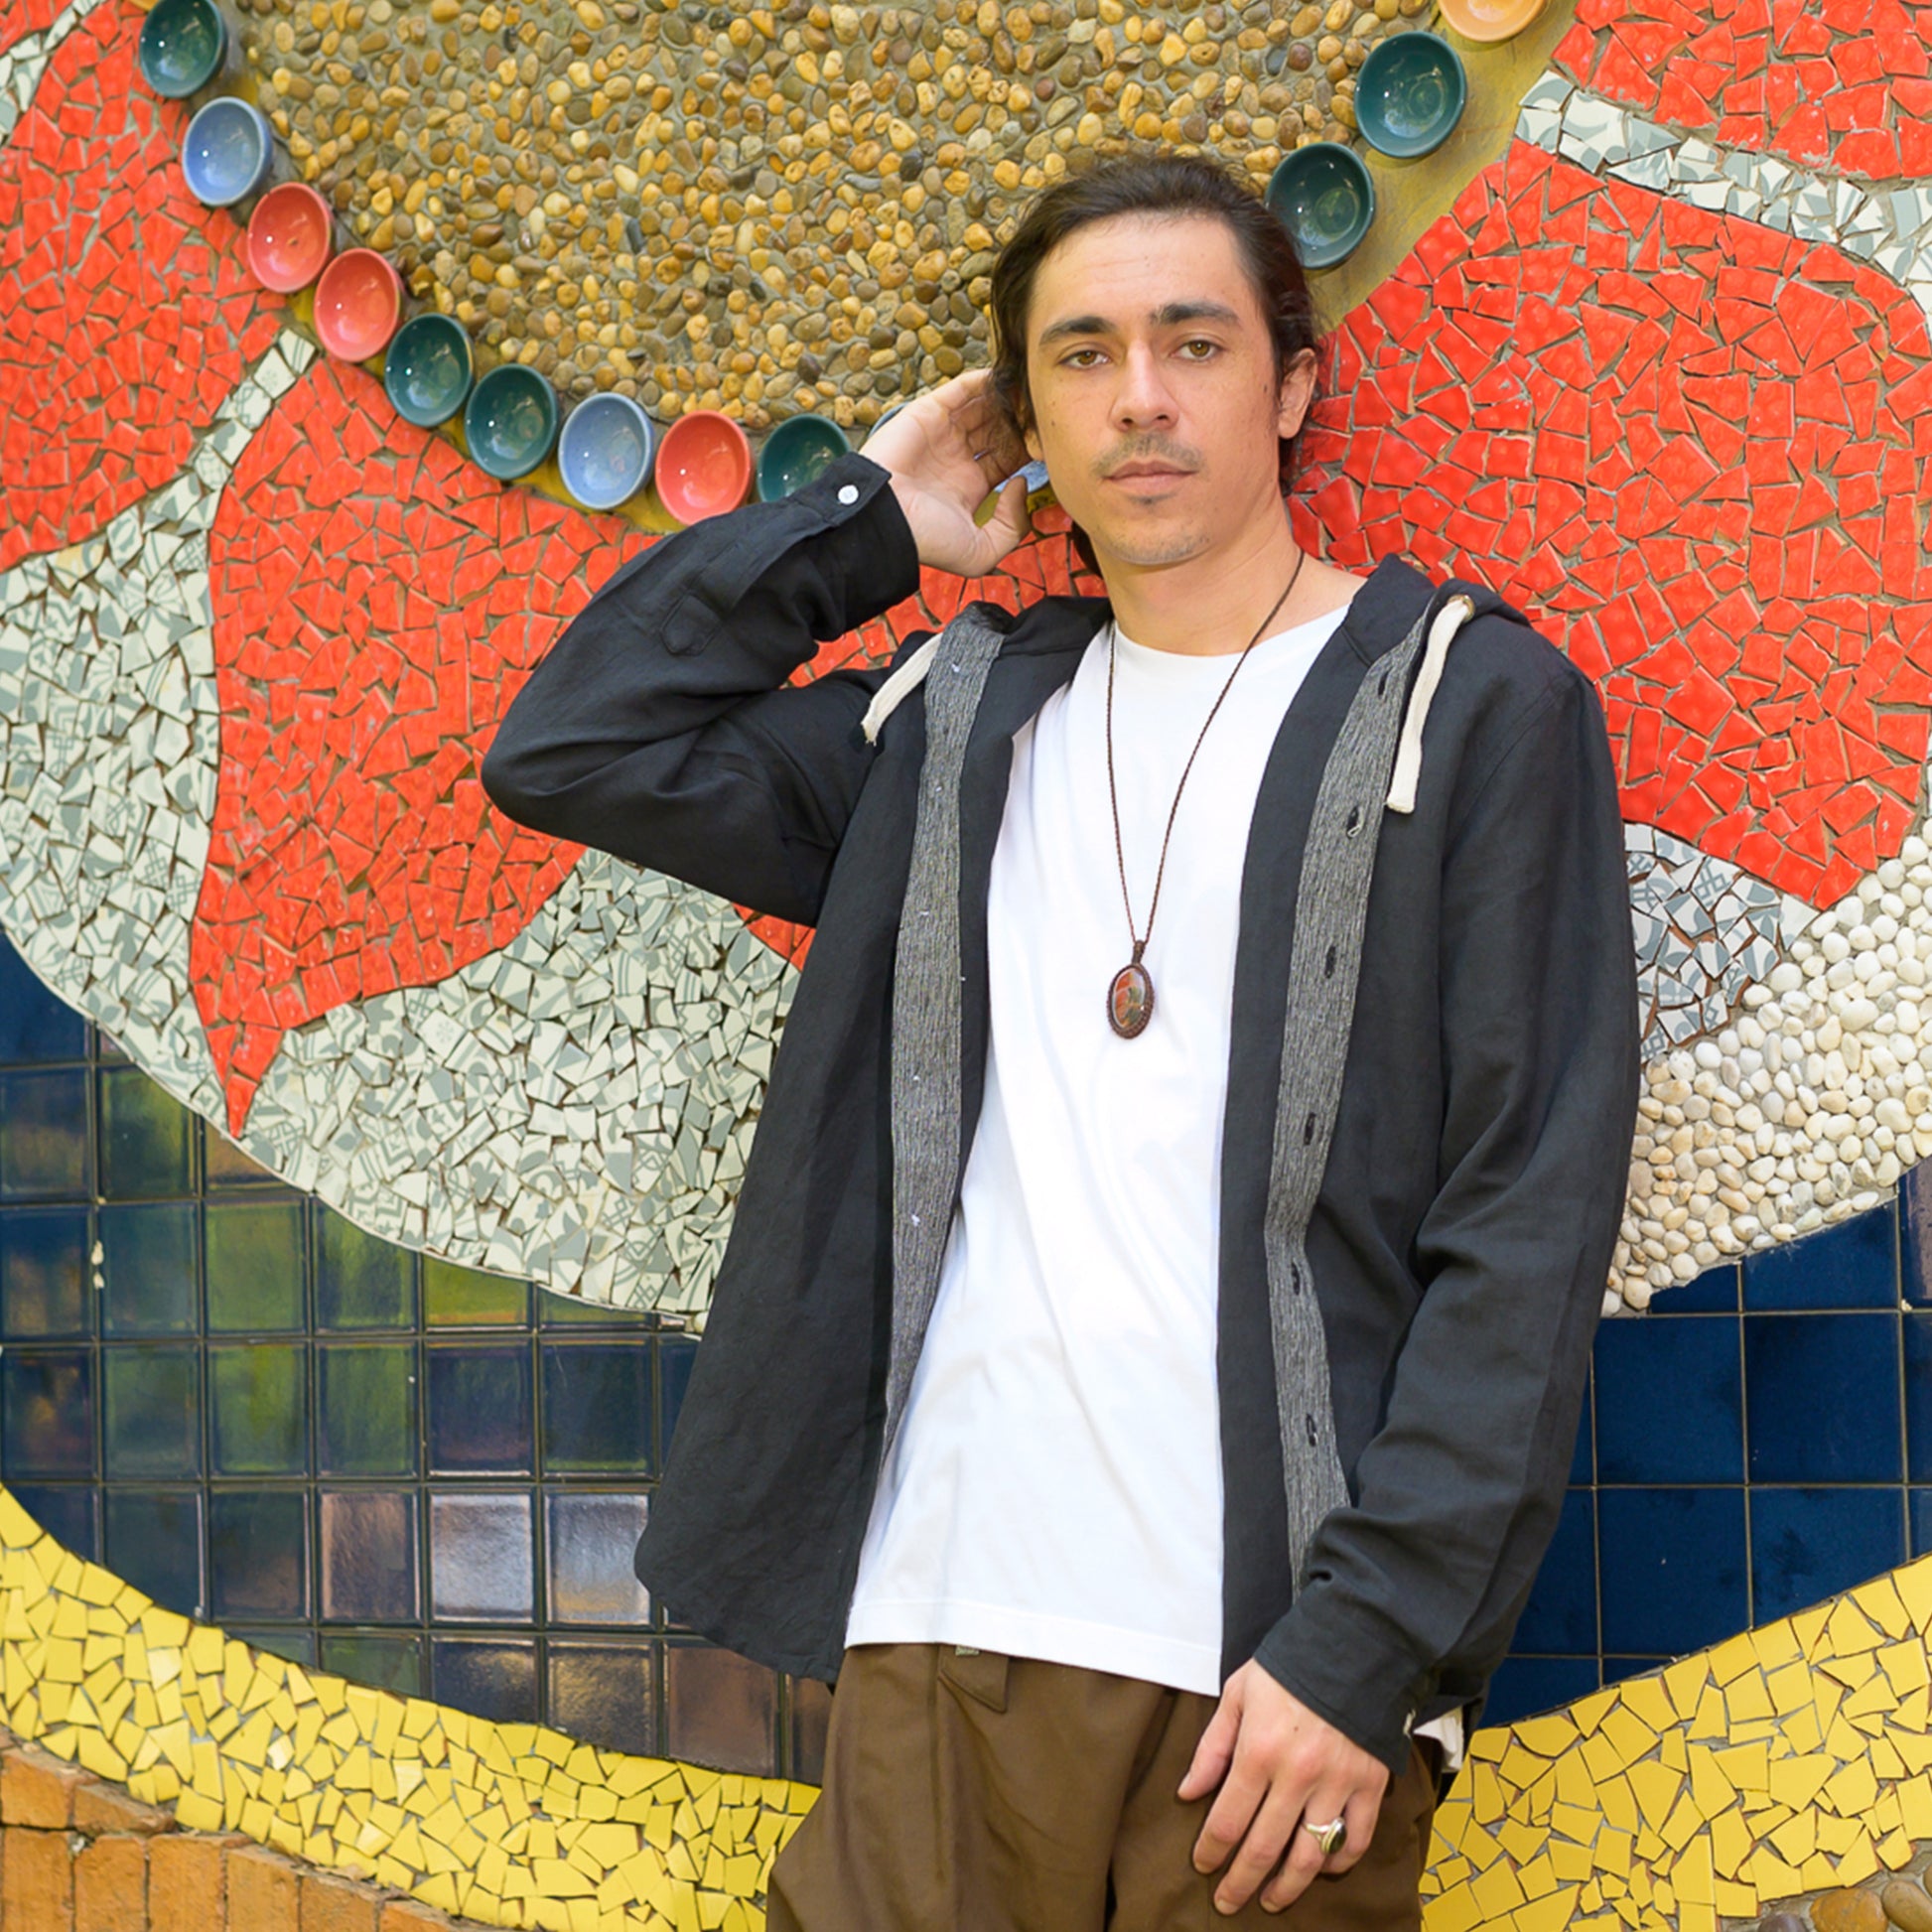 Ropa Hippie Hombre: Descubre Estilo y Comodidad en Tienda Hippie